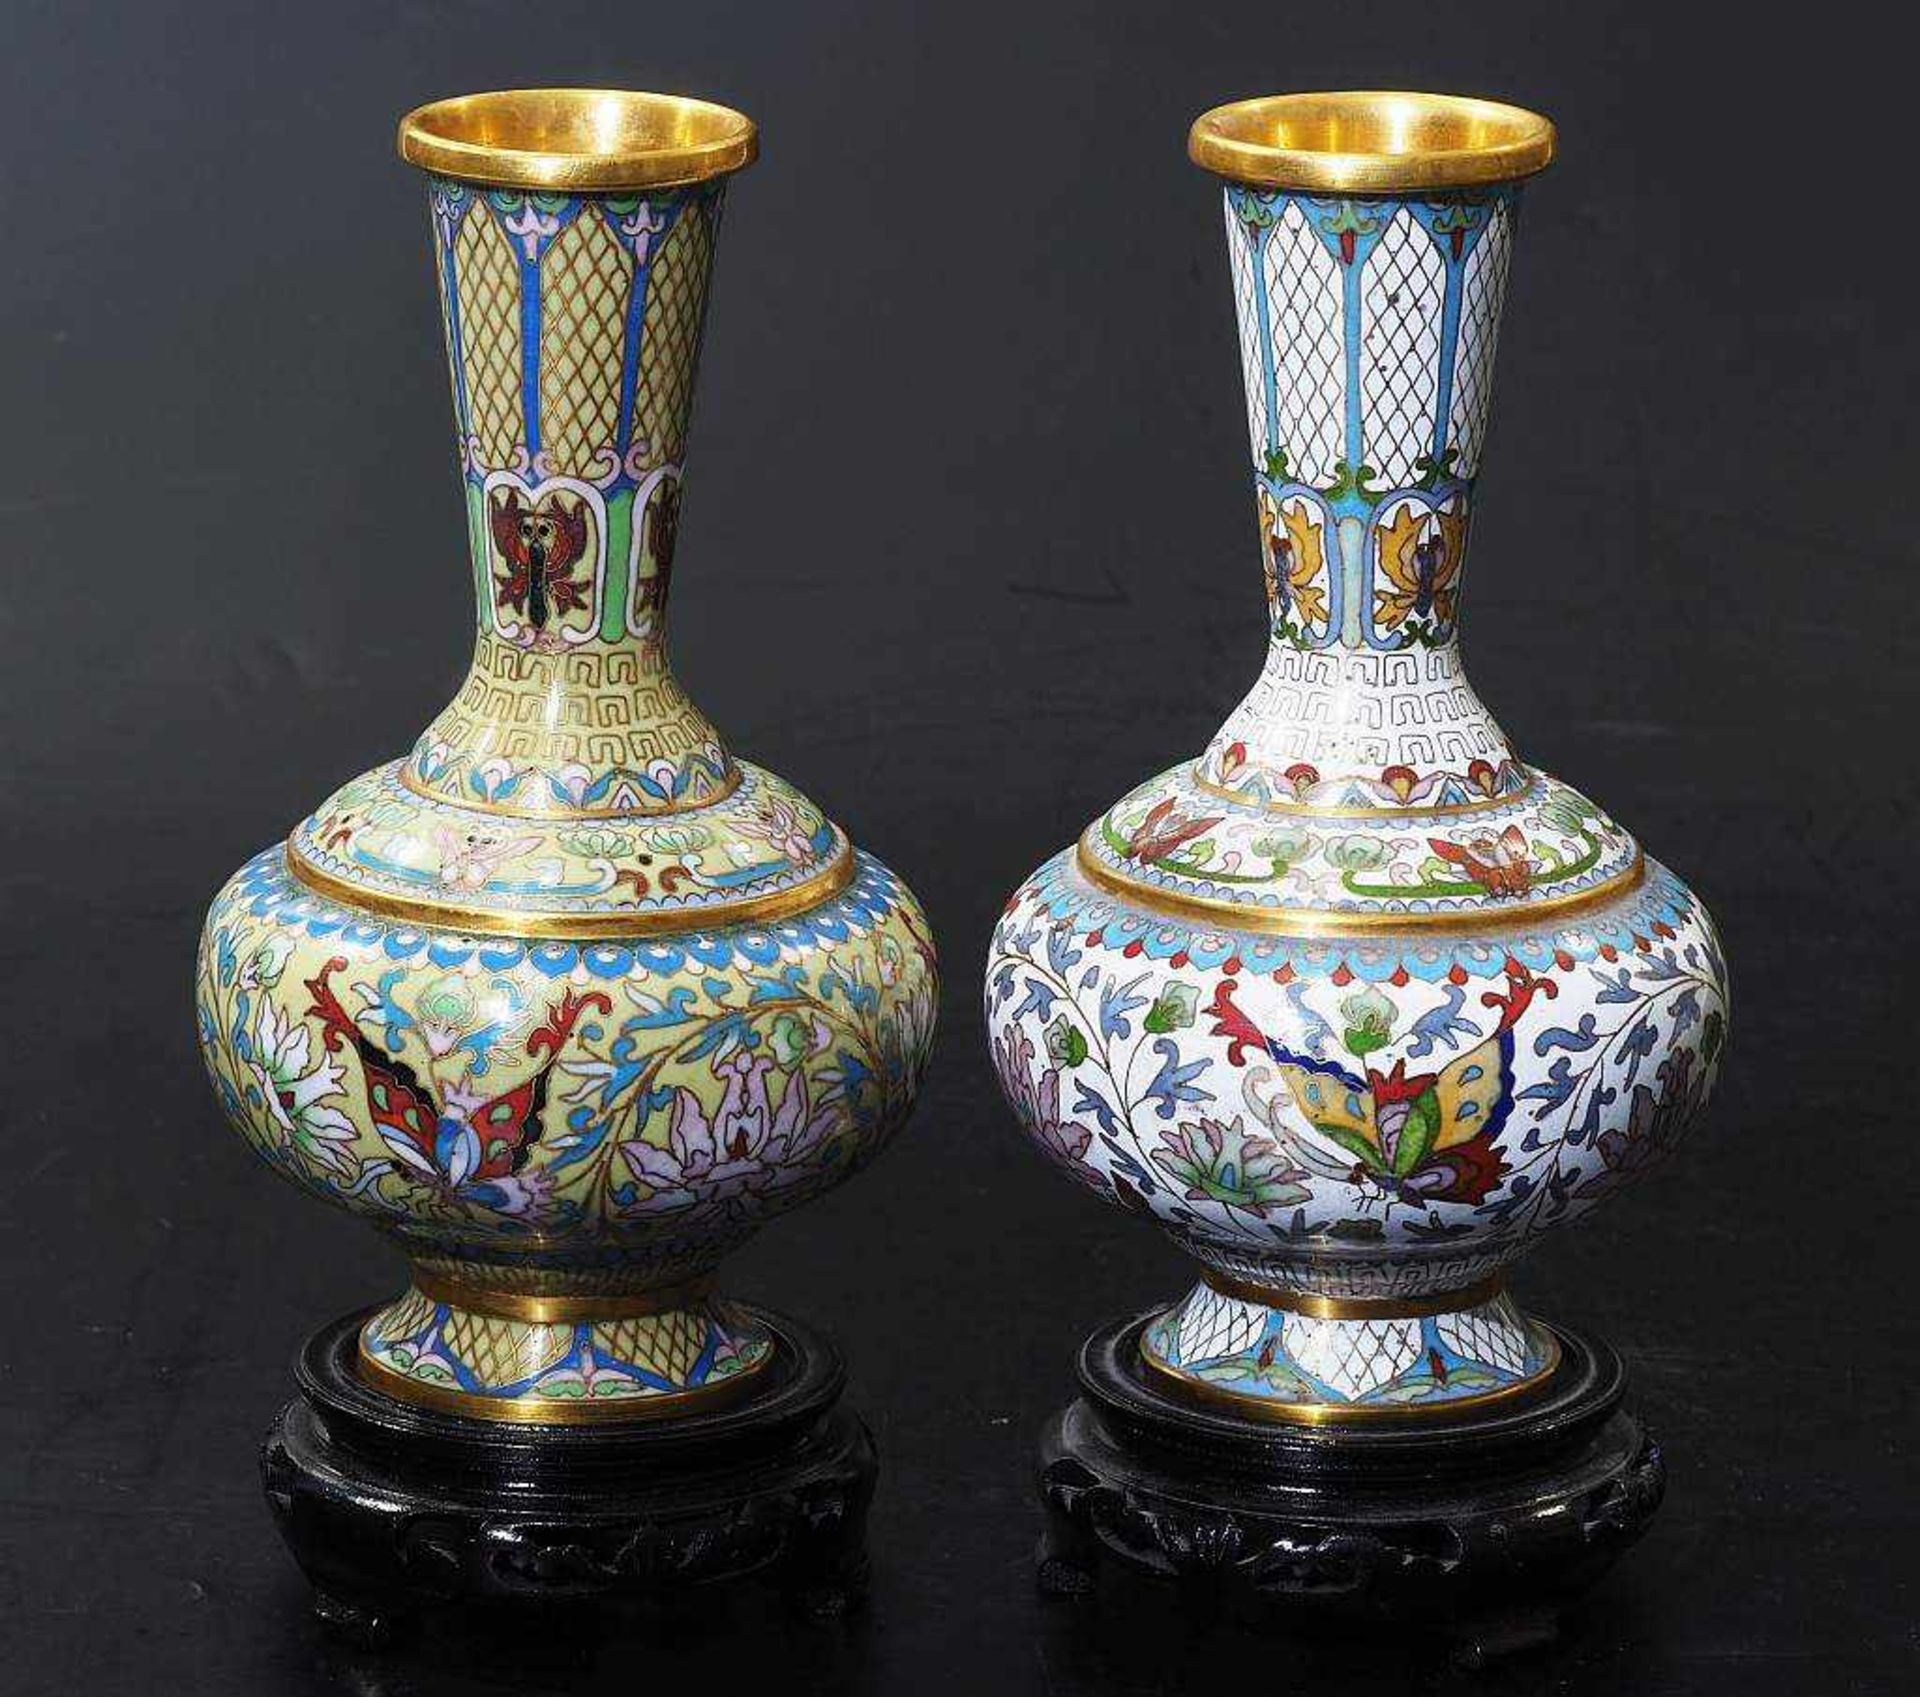 Zwei Cloisonne-Vasen auf Rosenholzsockel.Zwei Cloisonne-Vasen auf Rosenholzsockel. Messing, bauchige - Bild 2 aus 5